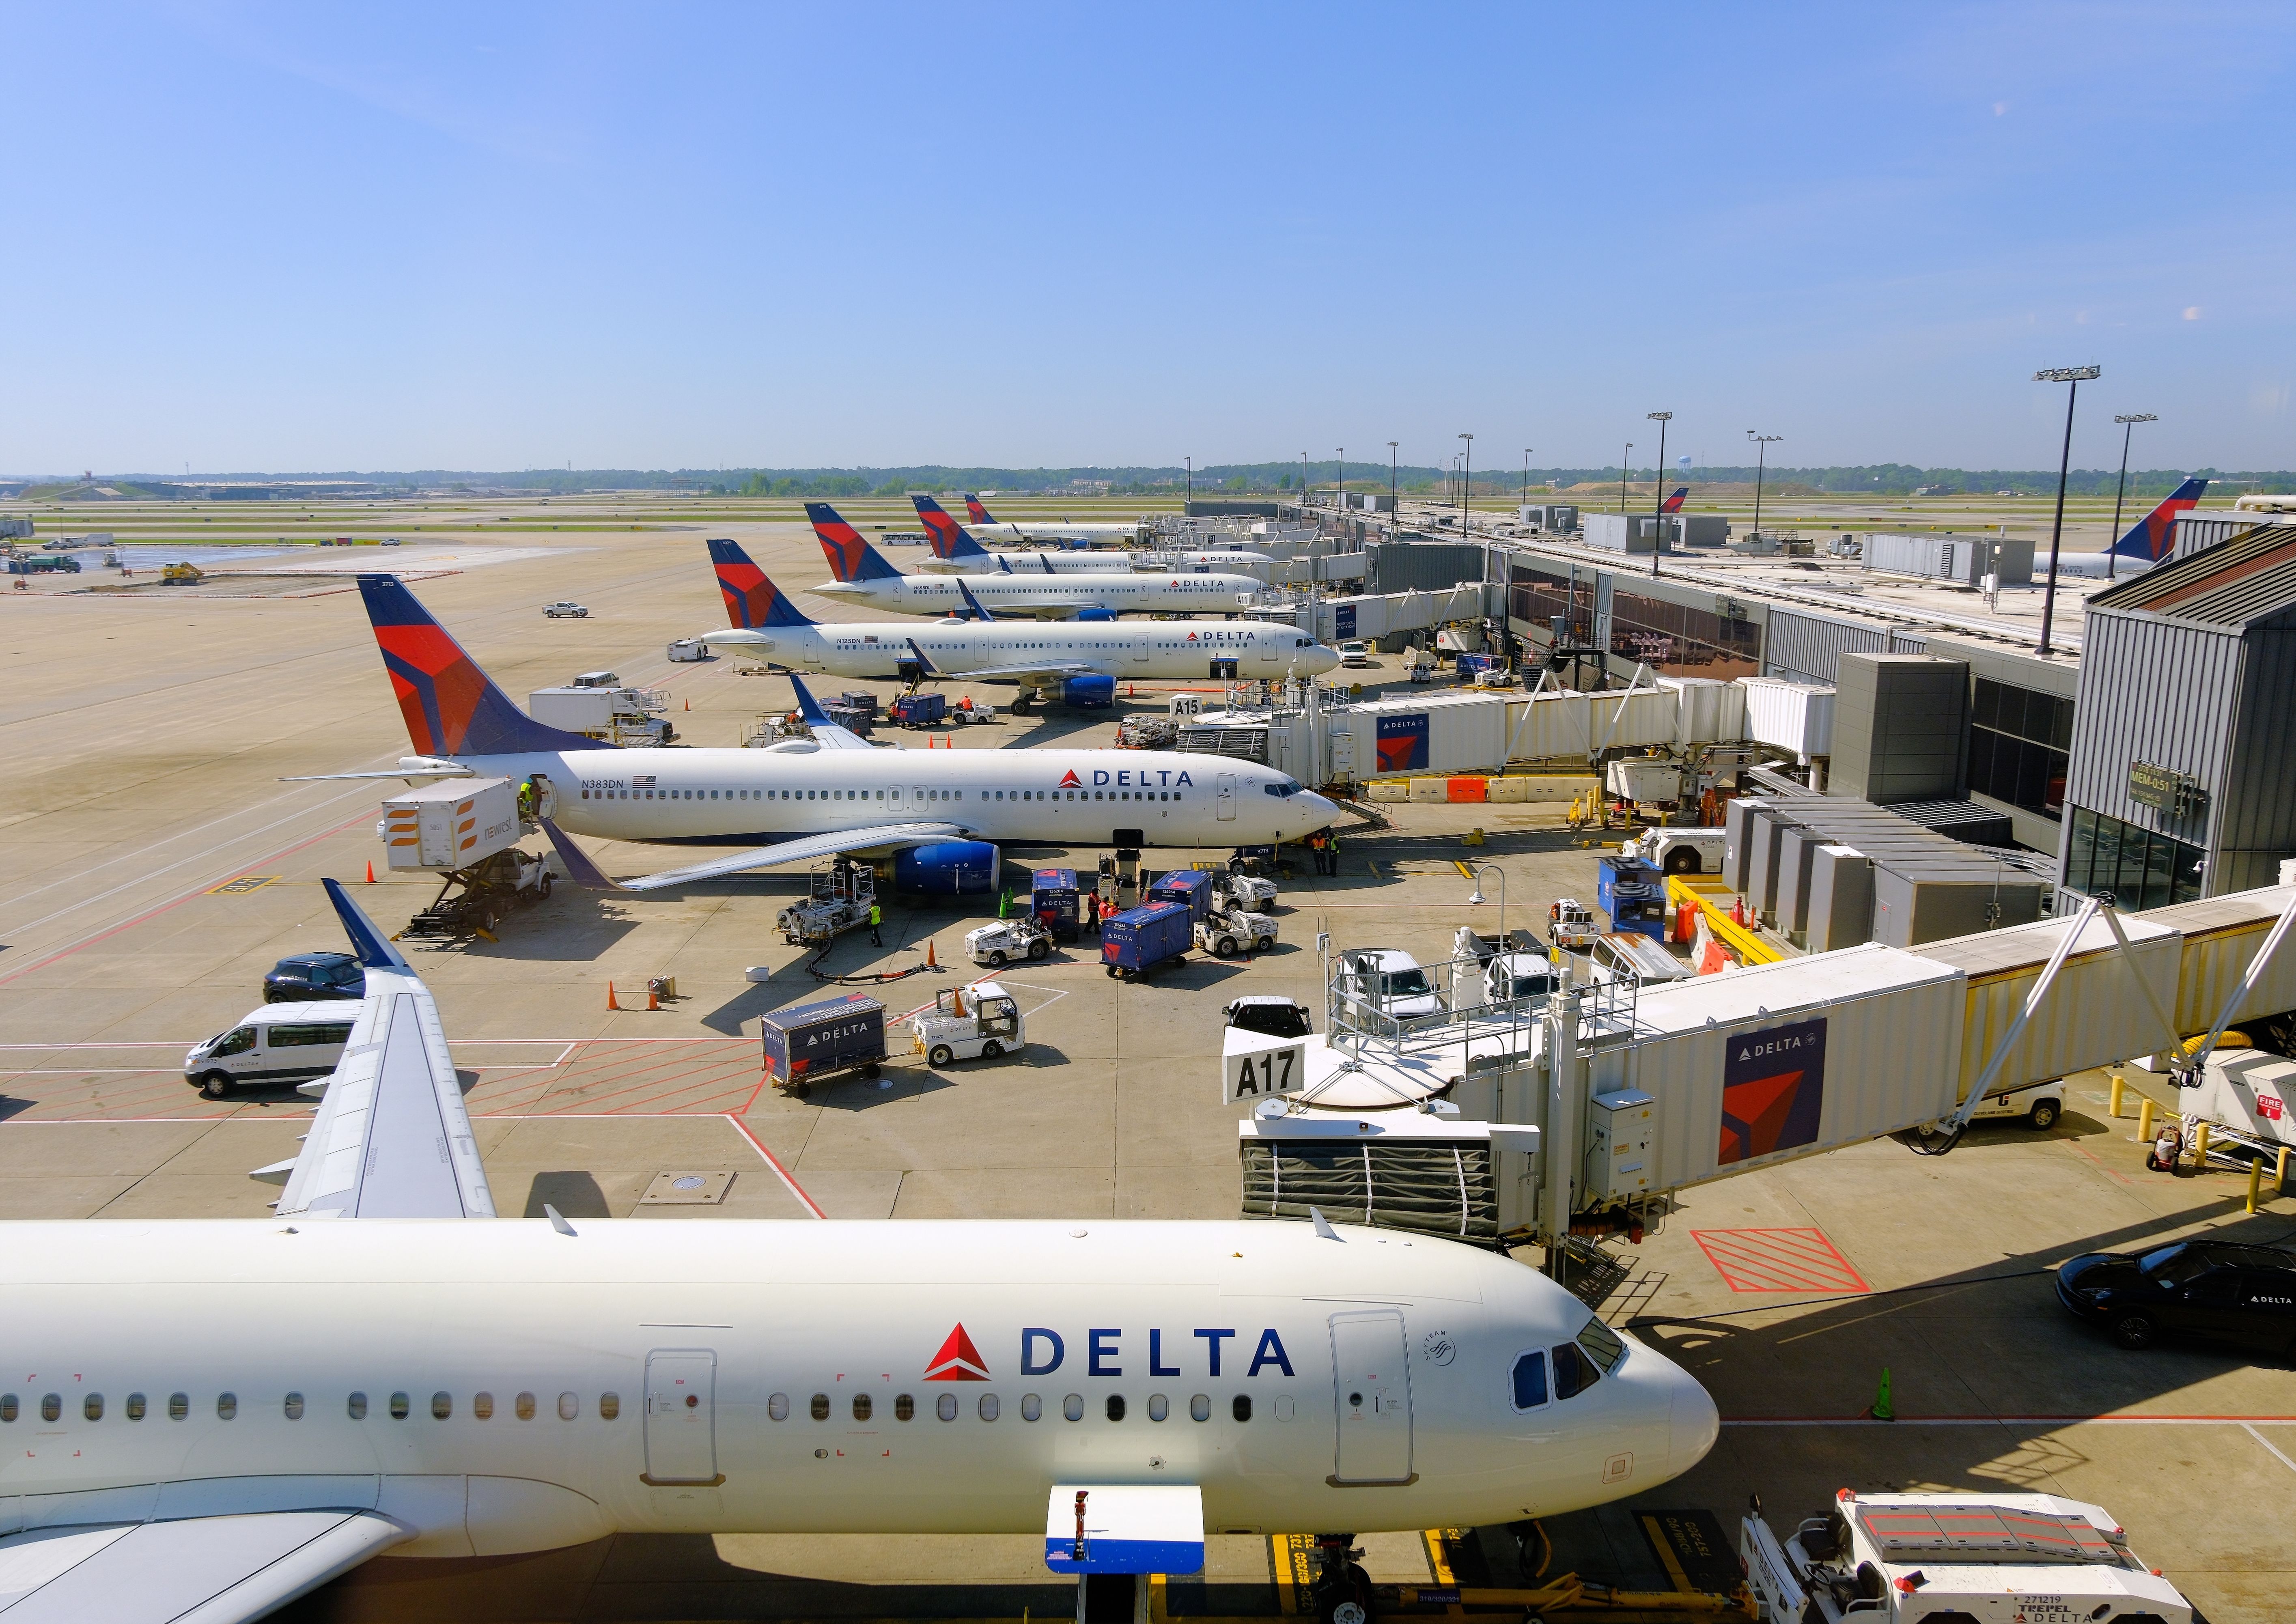 Several Delta Air Lines aircraft on the apron at Hartsfield-Jackson Atlanta International Airport.